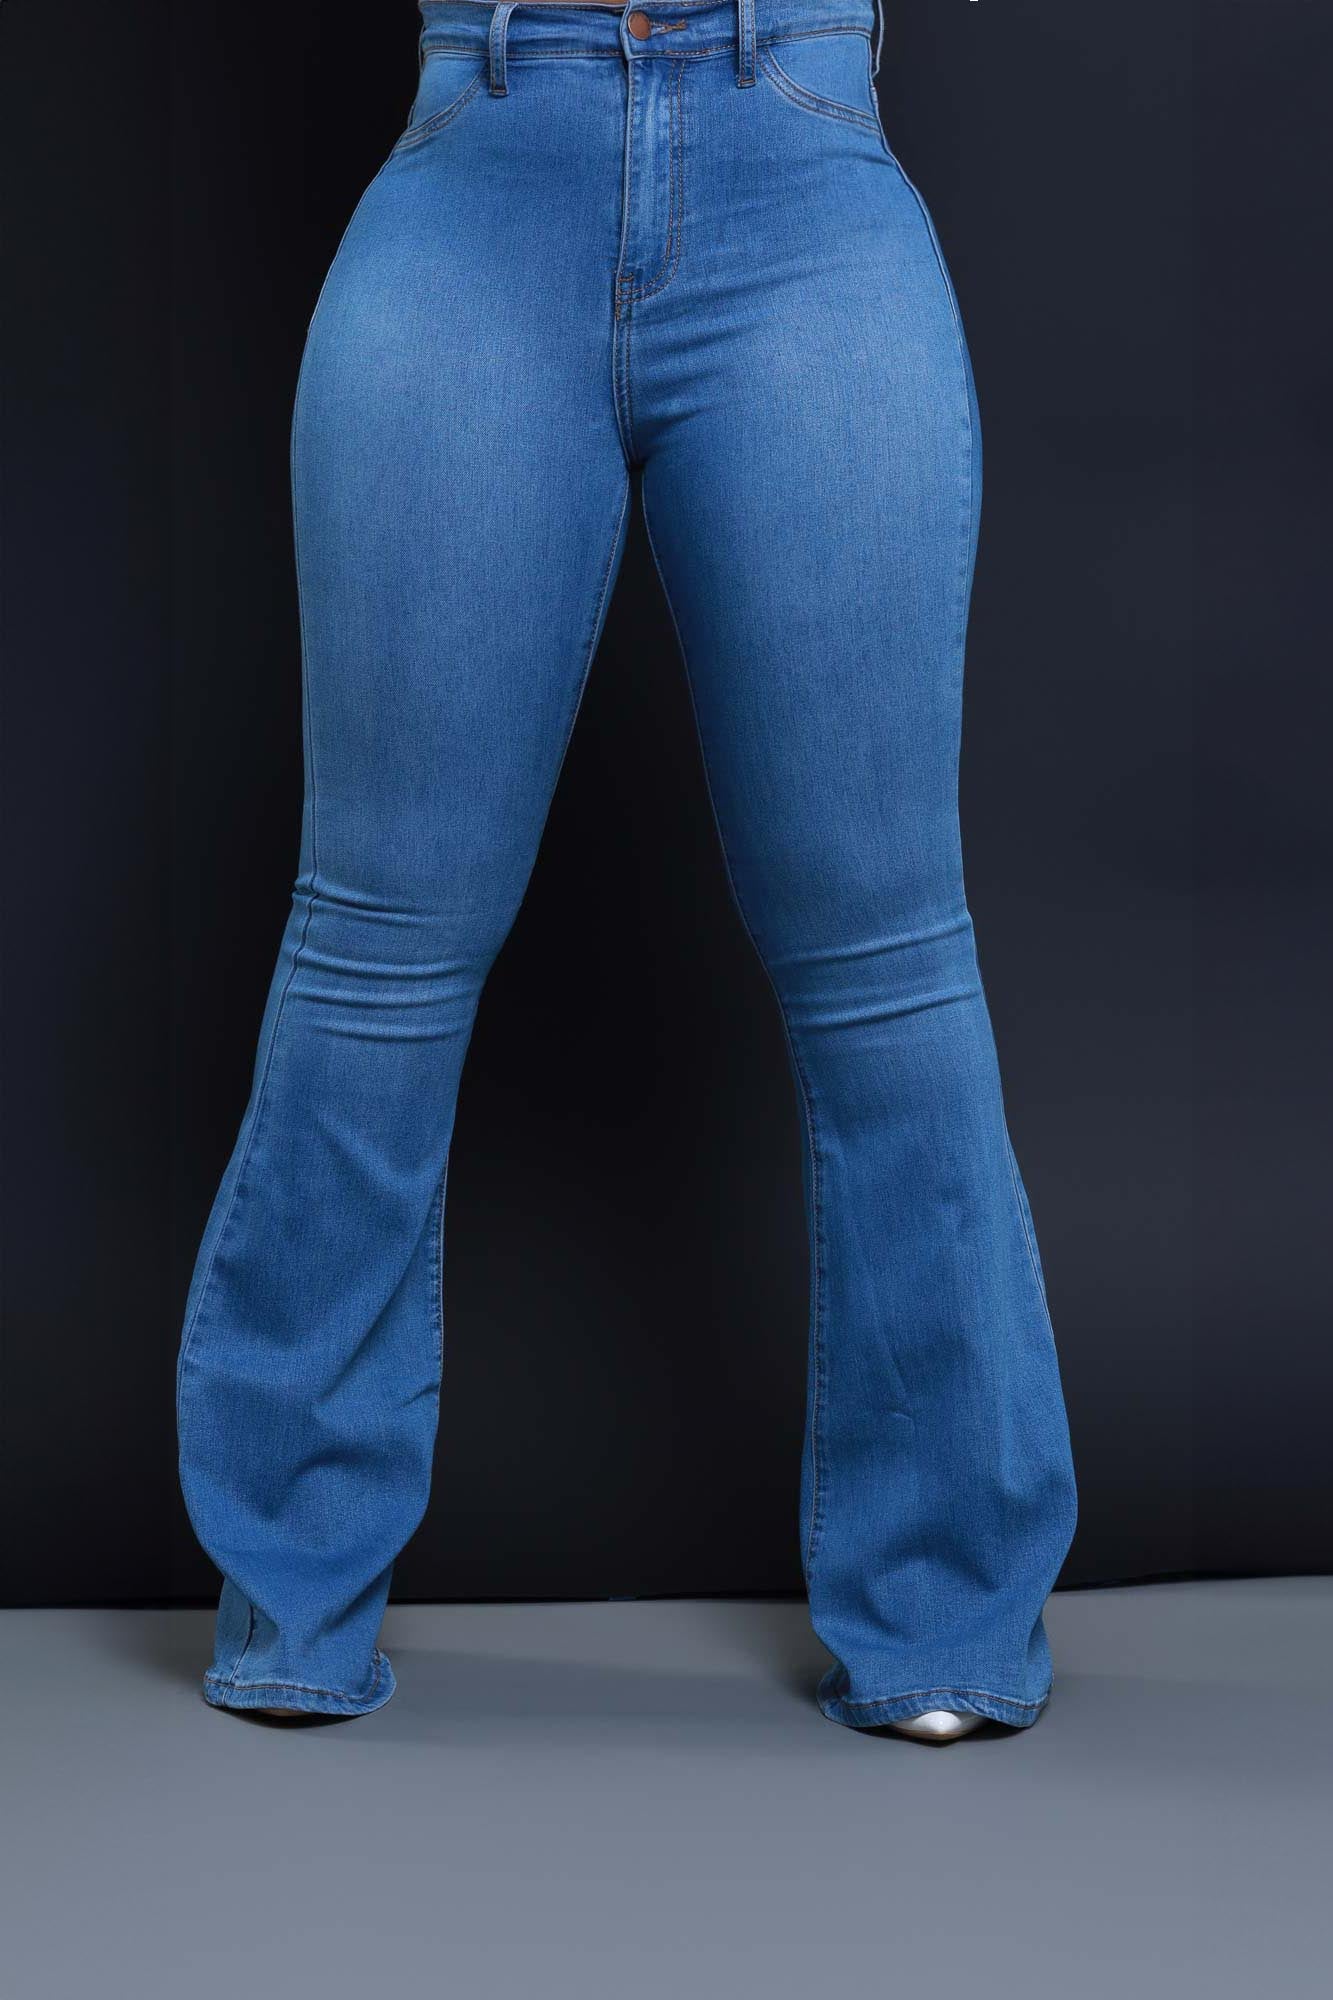 Flare Jeans Bell Bottoms, Womens Jeans Denim Bell Bottom